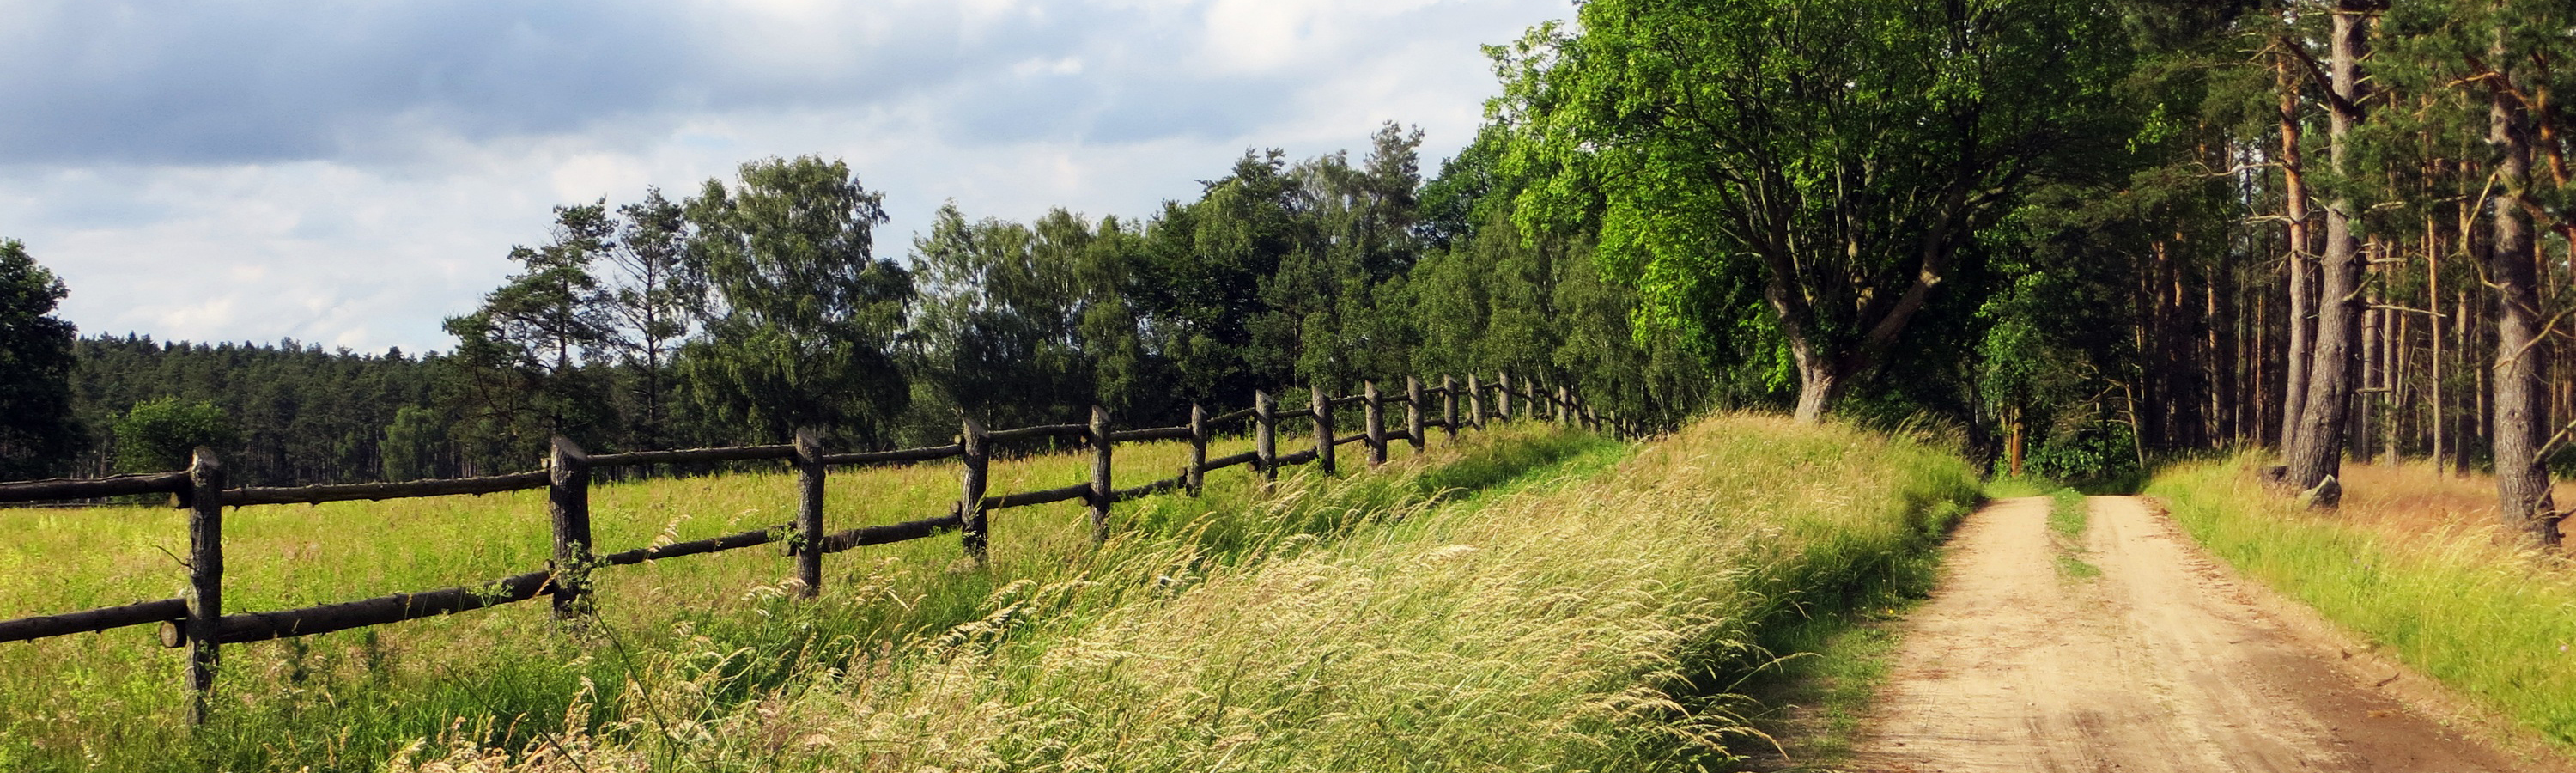 Bannerbild Waldweg im Sommer